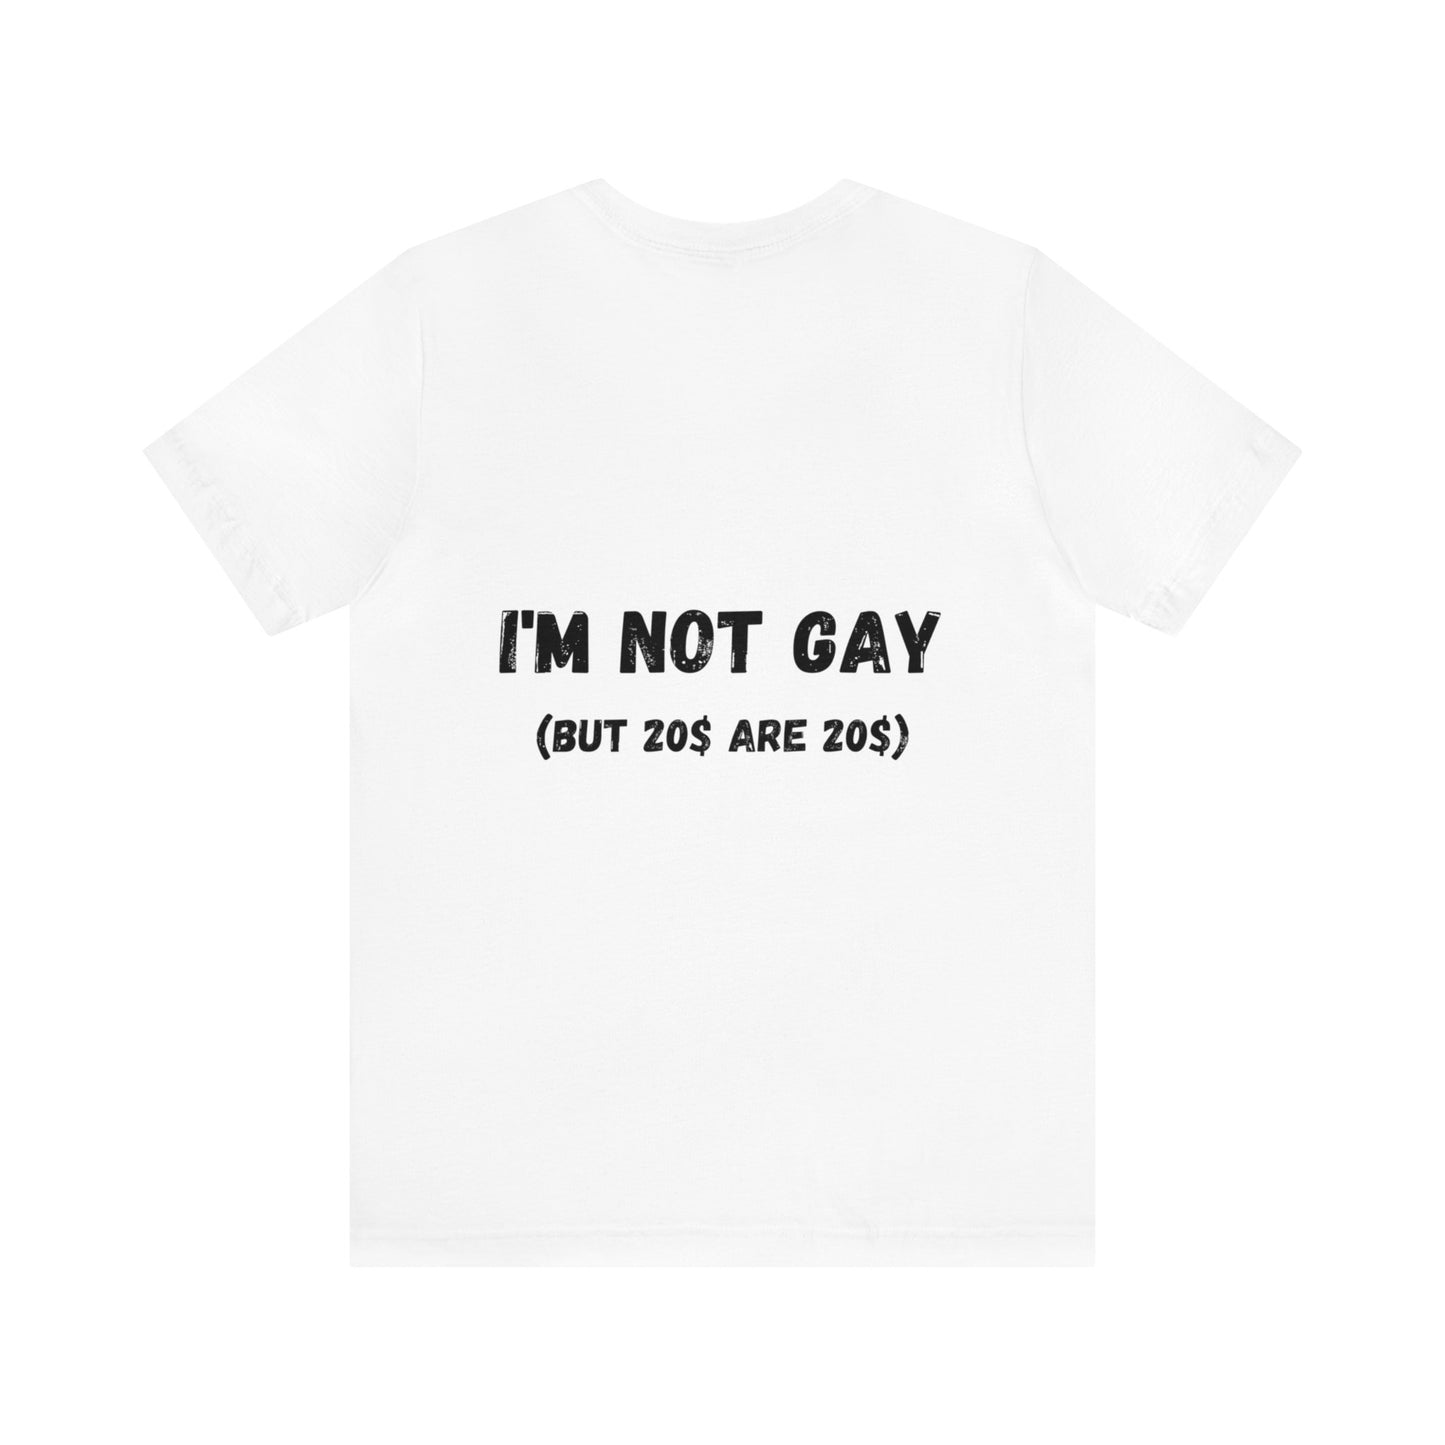 I'm not gay t-shirt